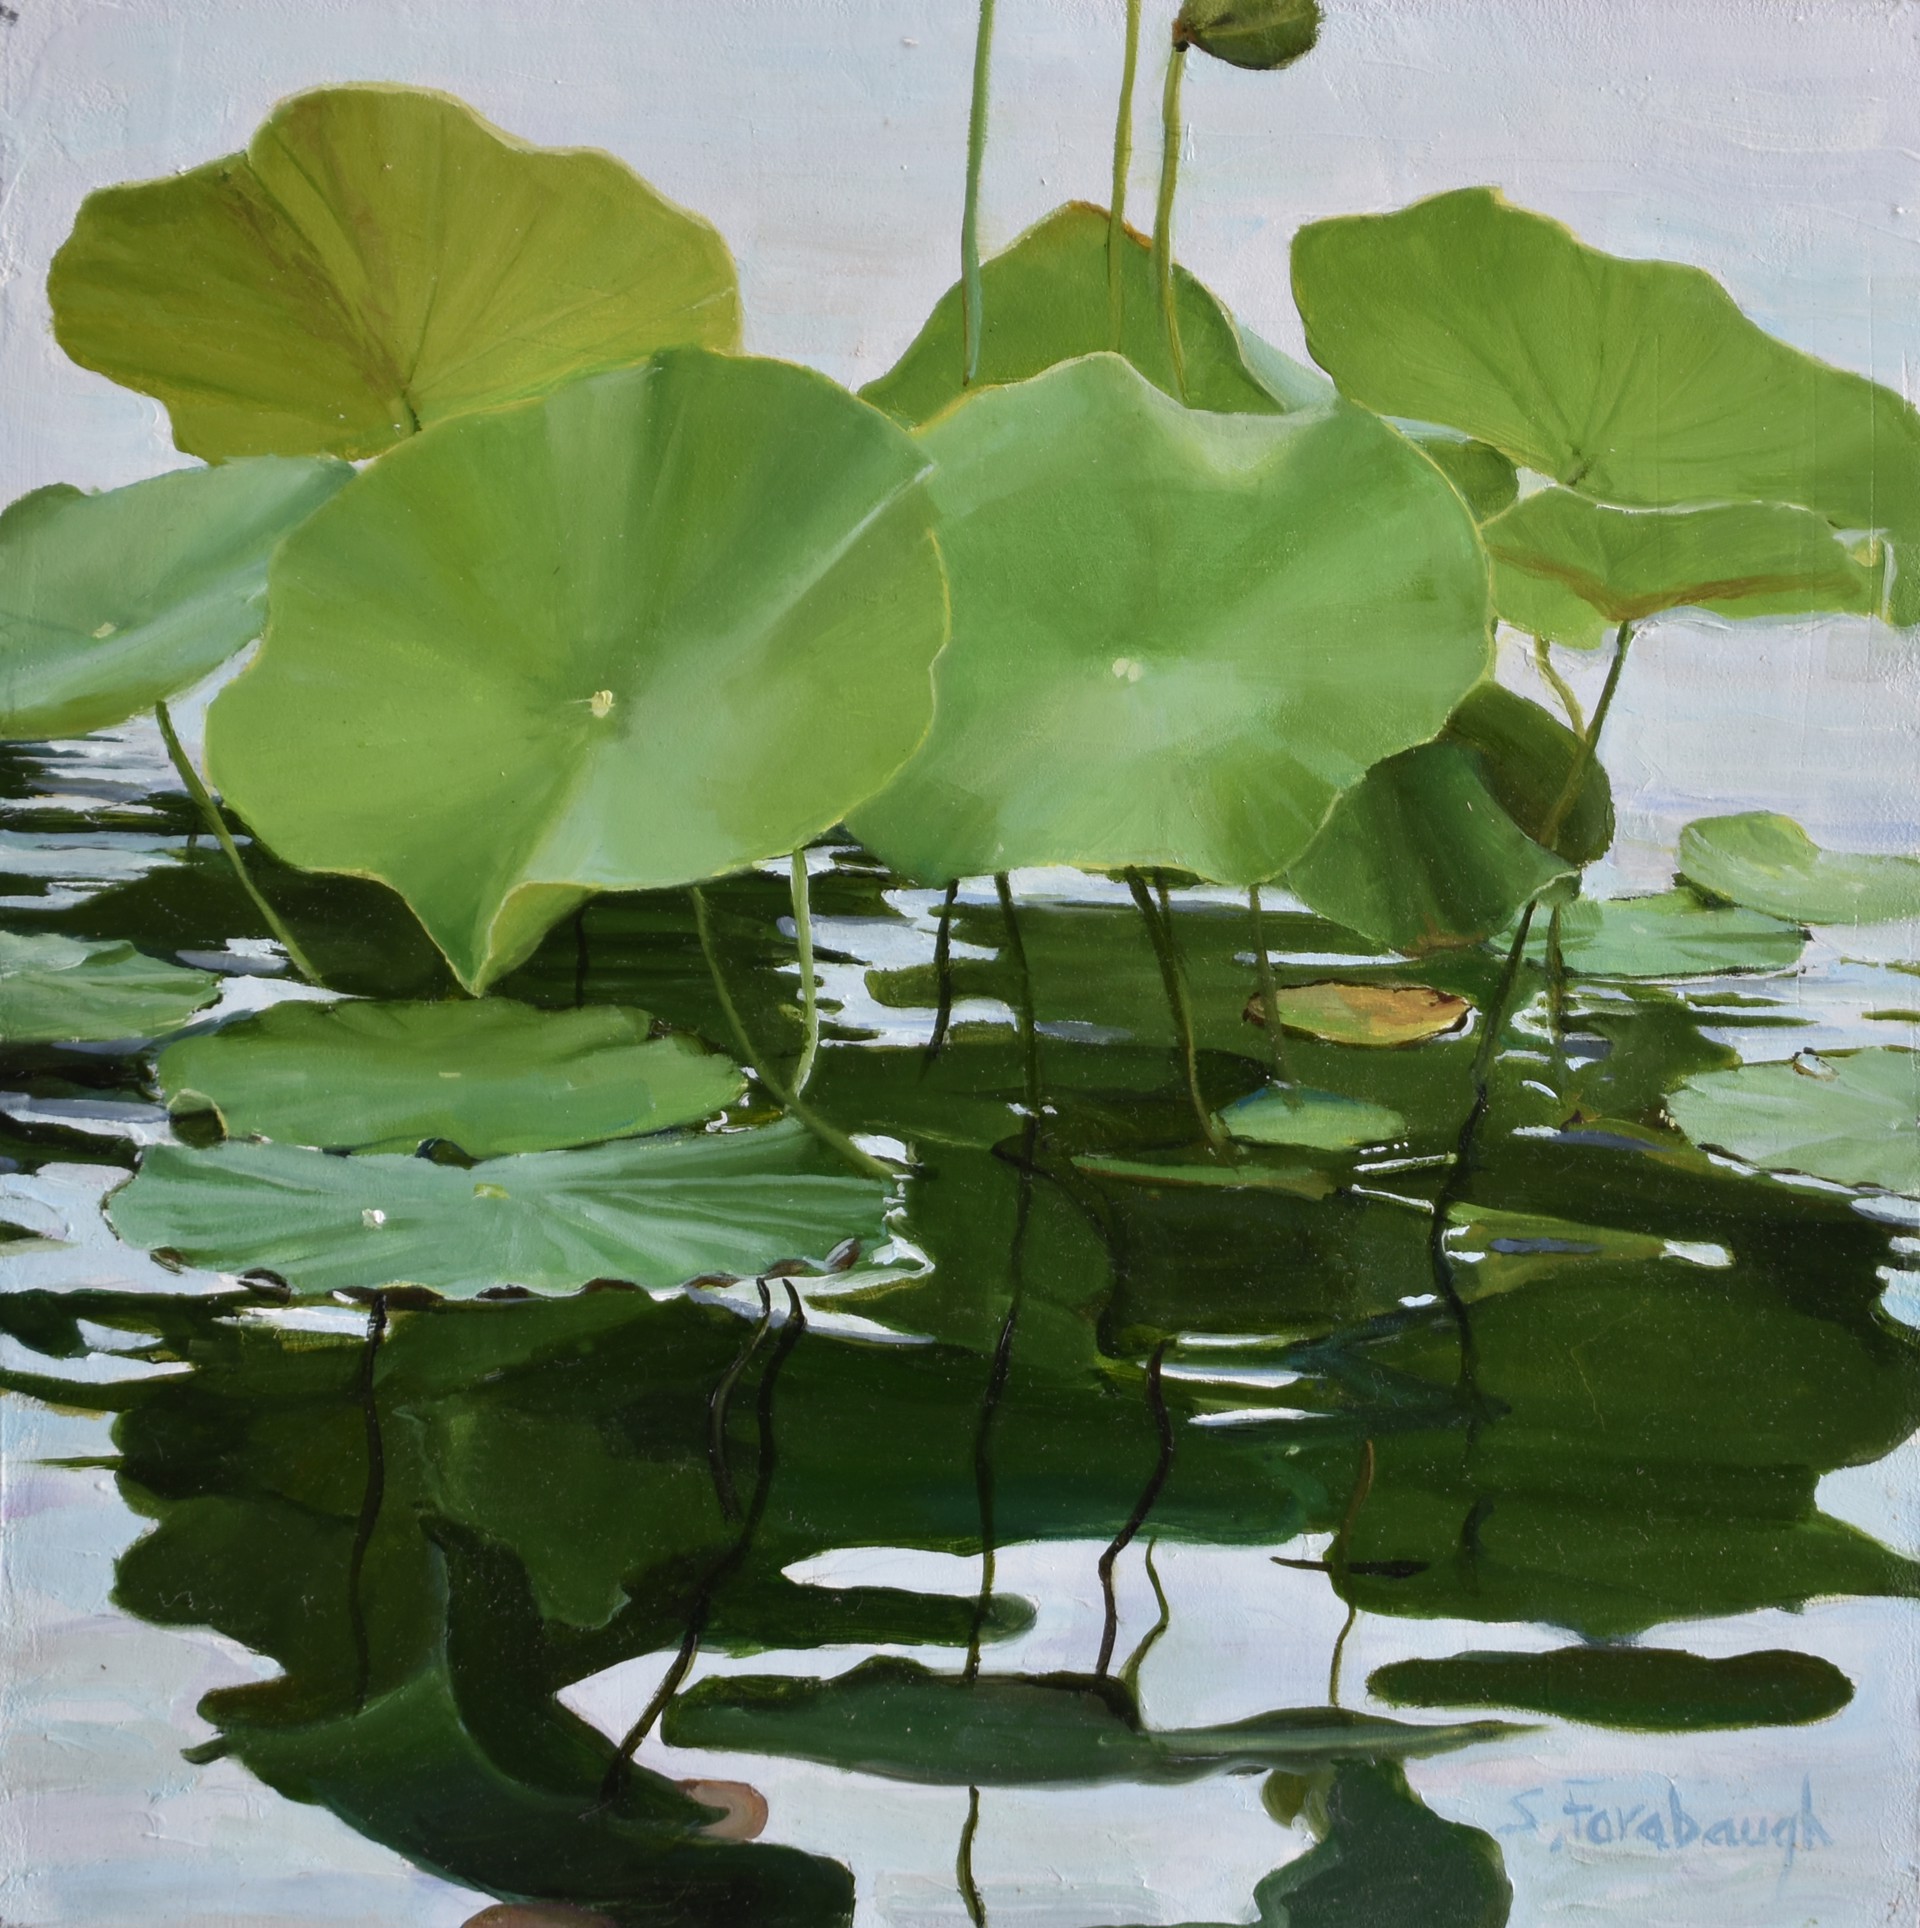 Lotus Leaves by Sheri Farabaugh